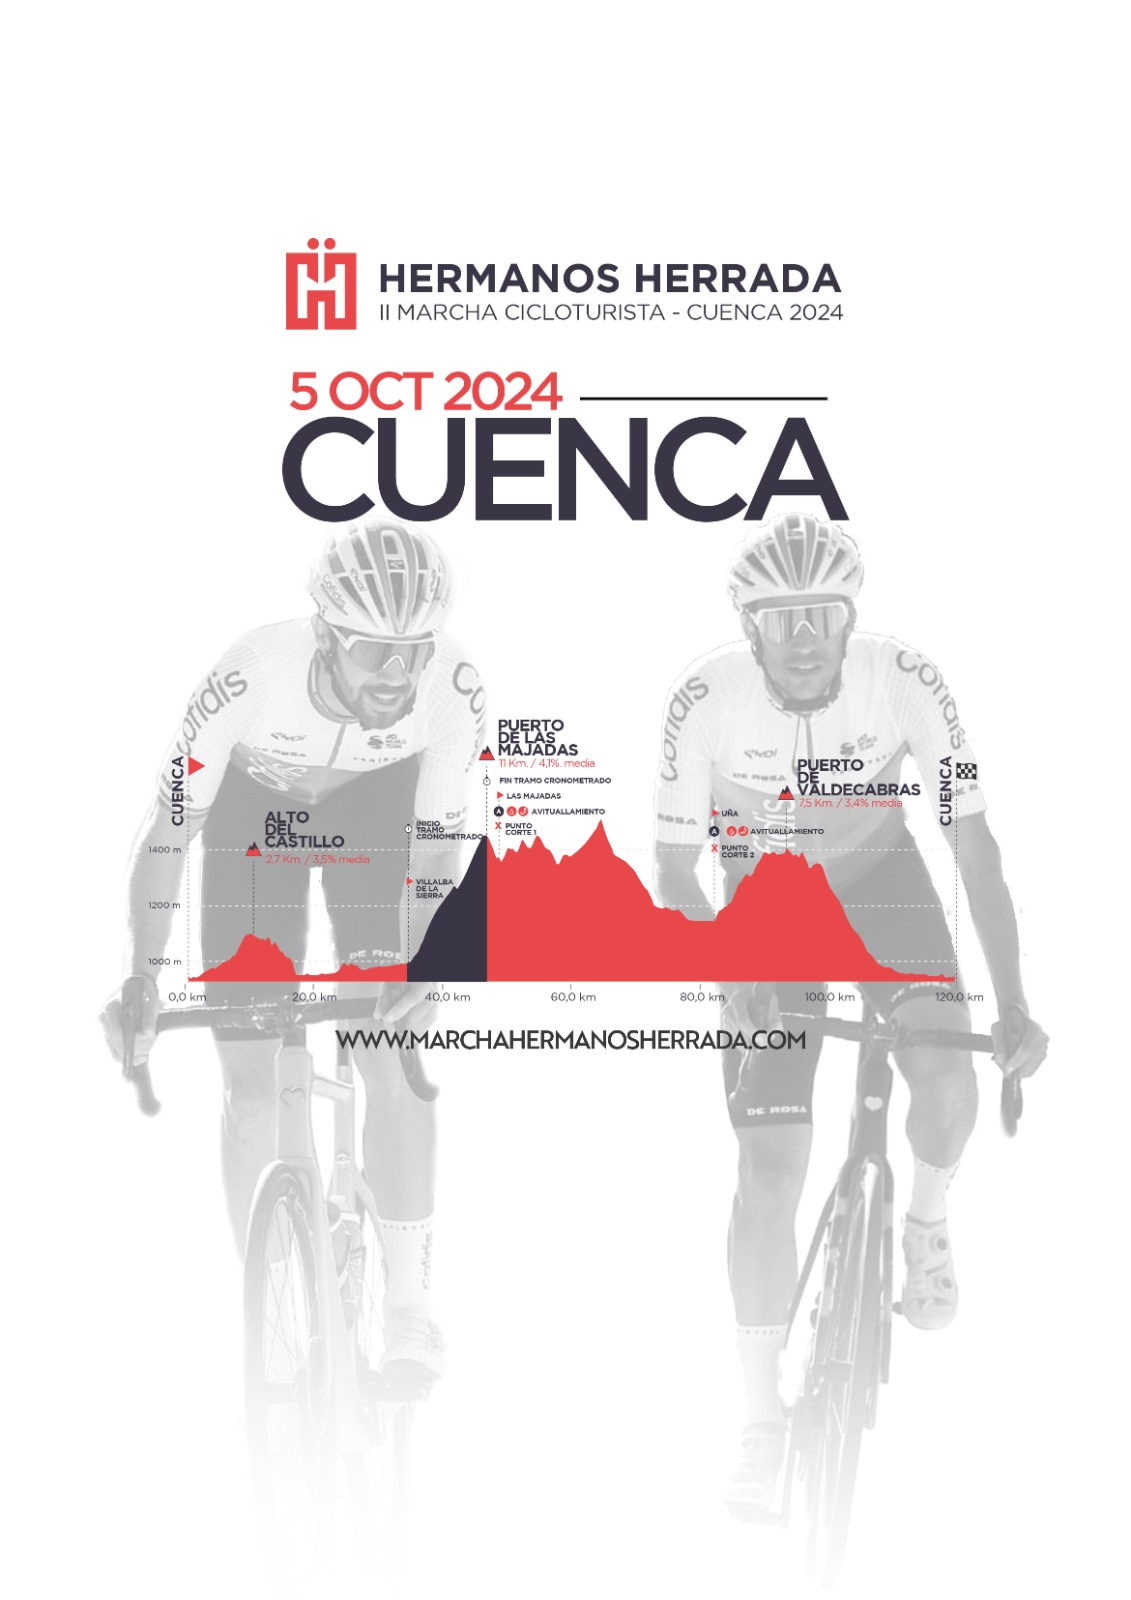 MARCHA CICLOTURISTA - HERMANOS HERRADA - CUENCA 2024